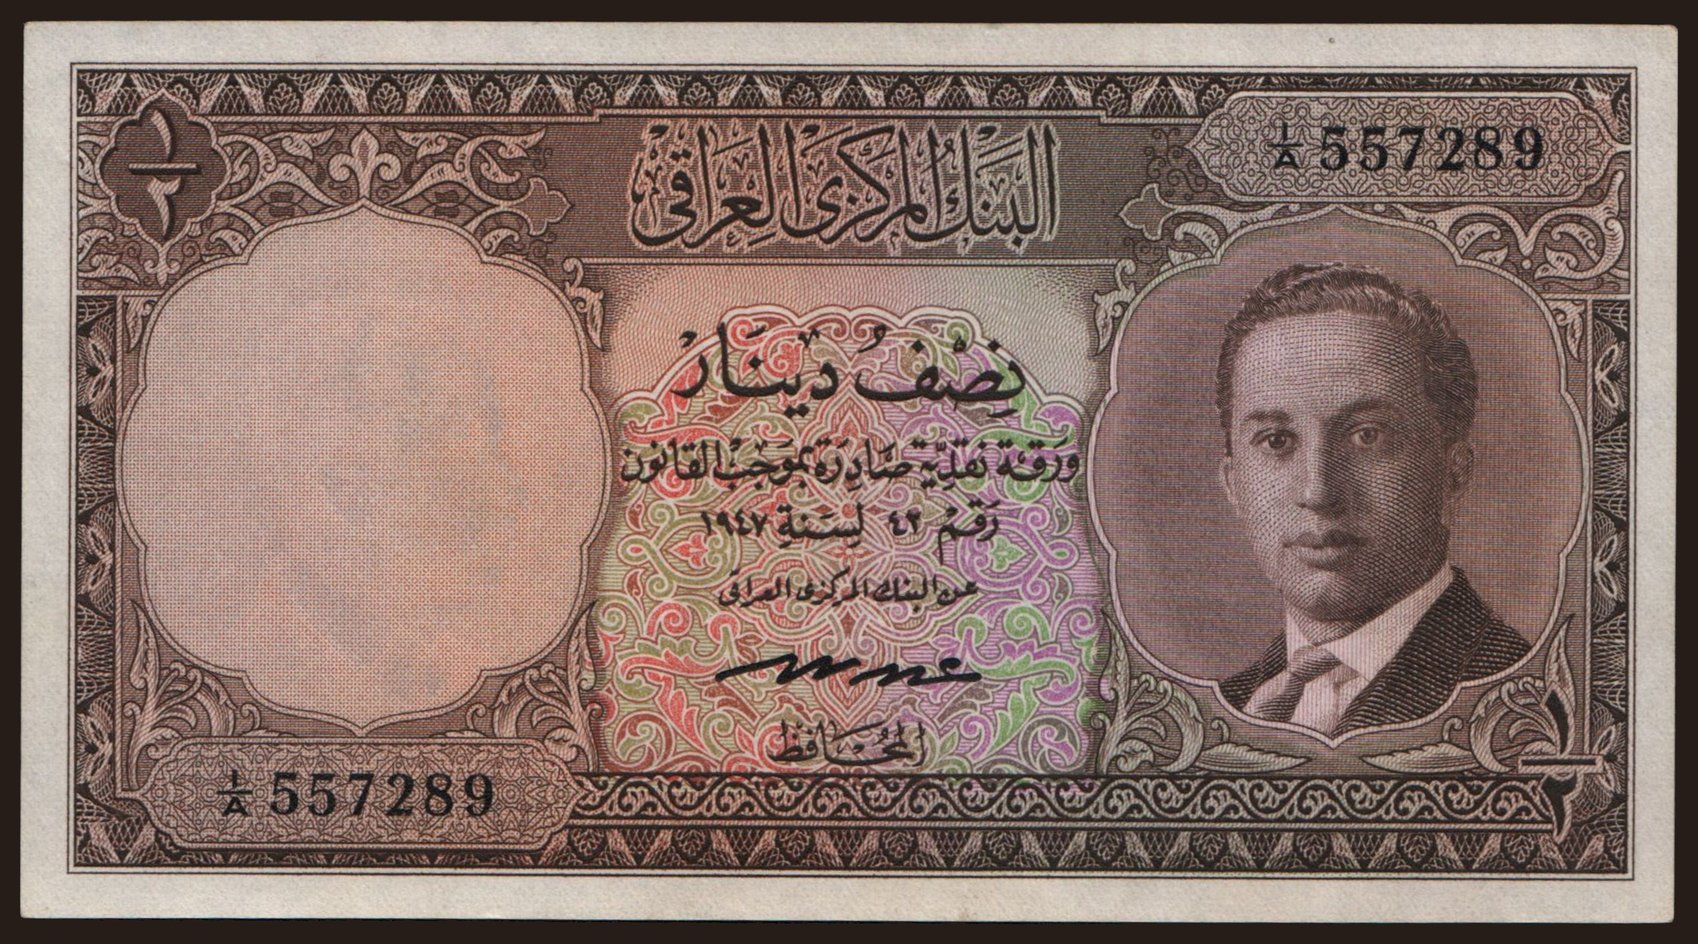 1/2 dinar, 1959